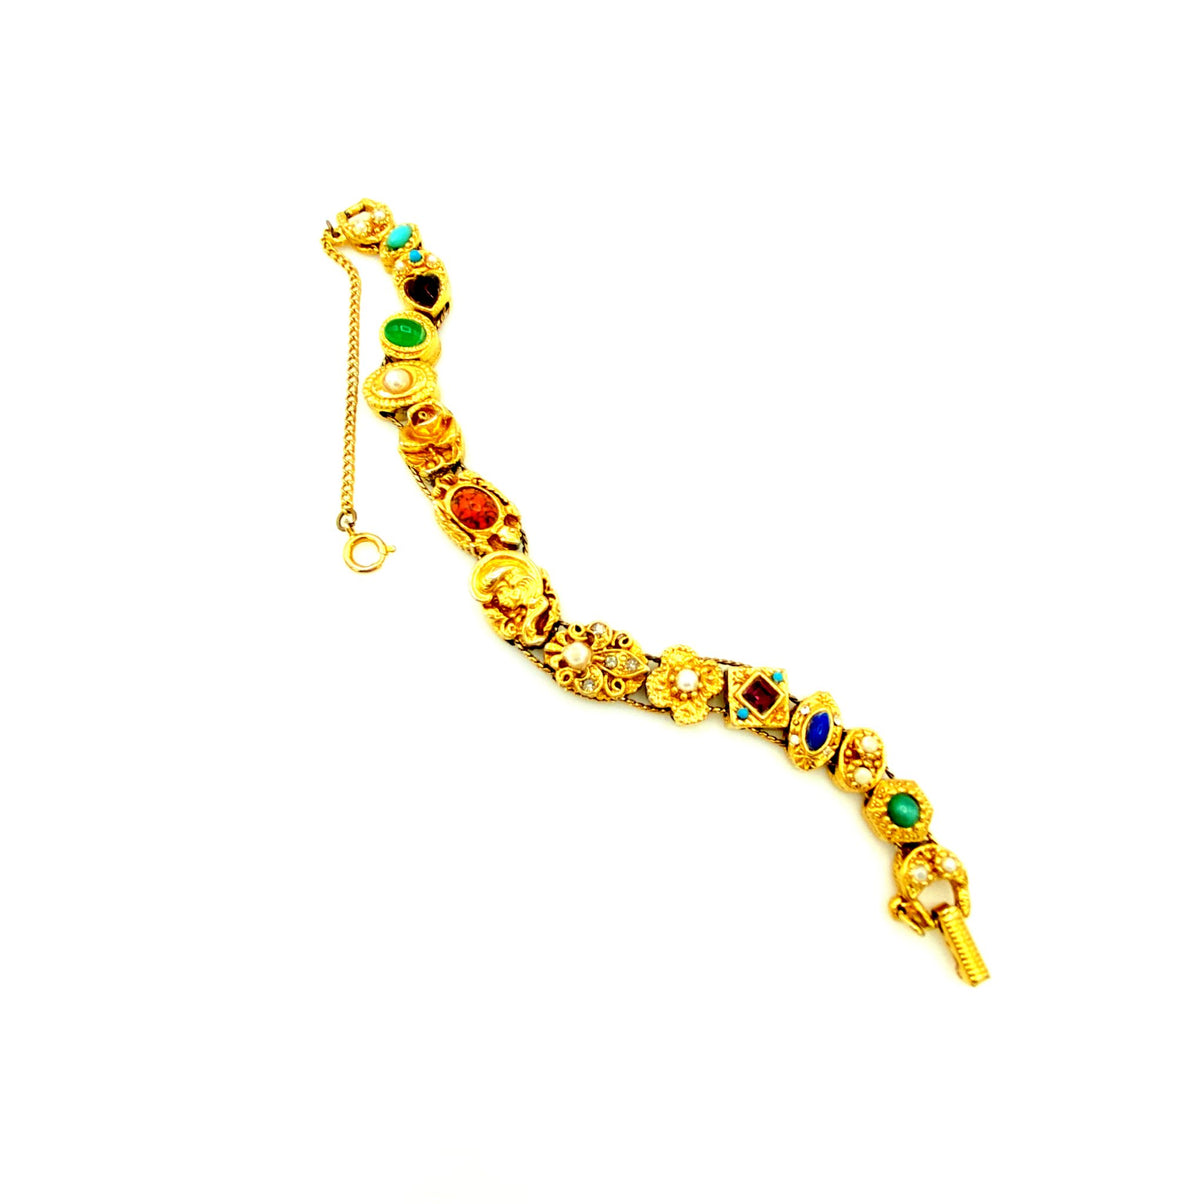 Vintage Gold Victorian Revival Slide Charm Bracelet - 24 Wishes Vintage Jewelry